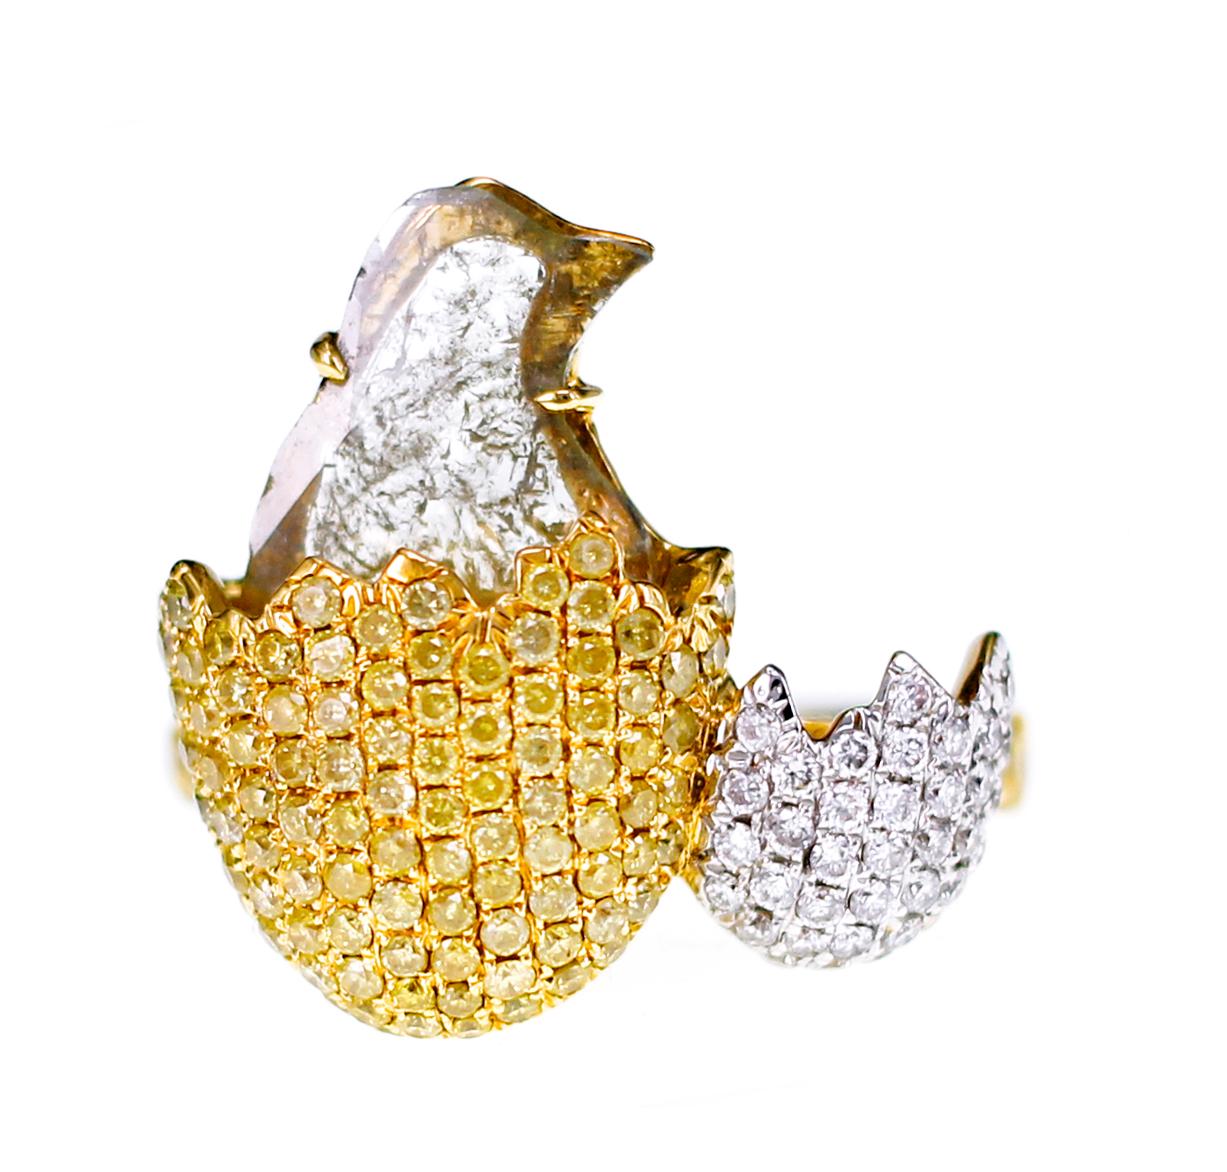 1.36 Carat Bird Shaped Slice Diamond with 1.14 carat of Intense Yellow Diamond and White Diamond,